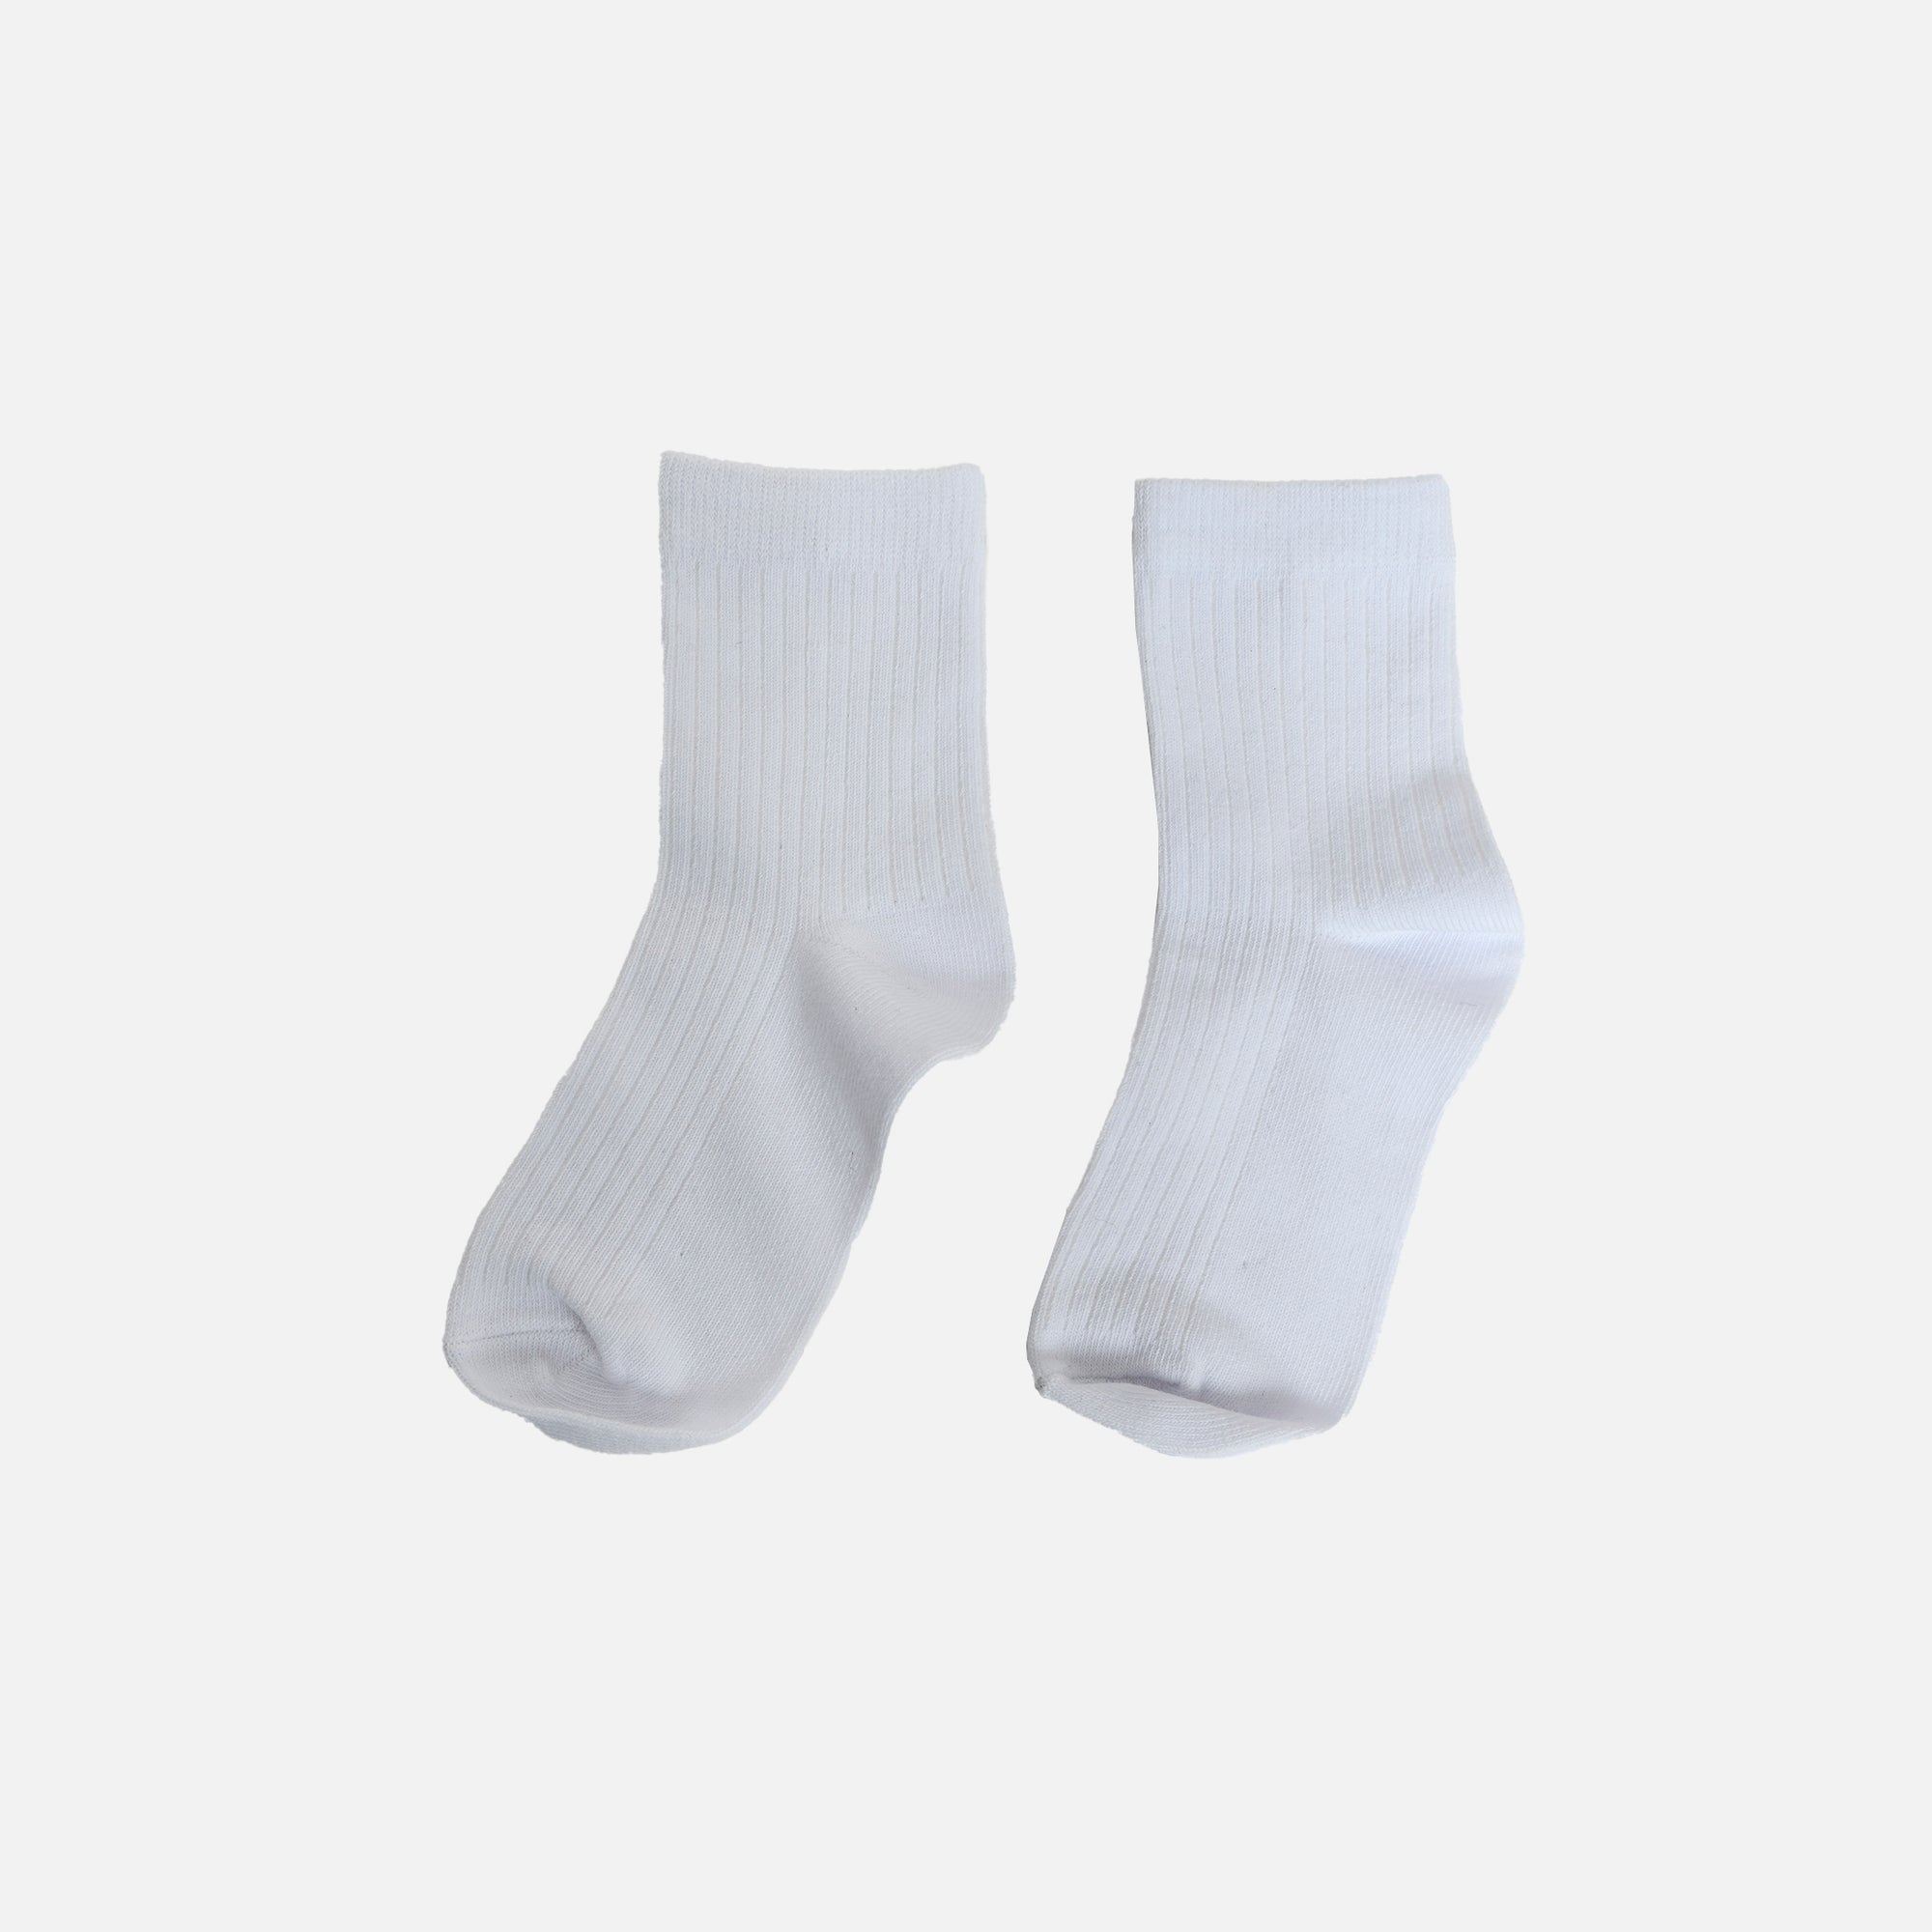 Plain white socks for children